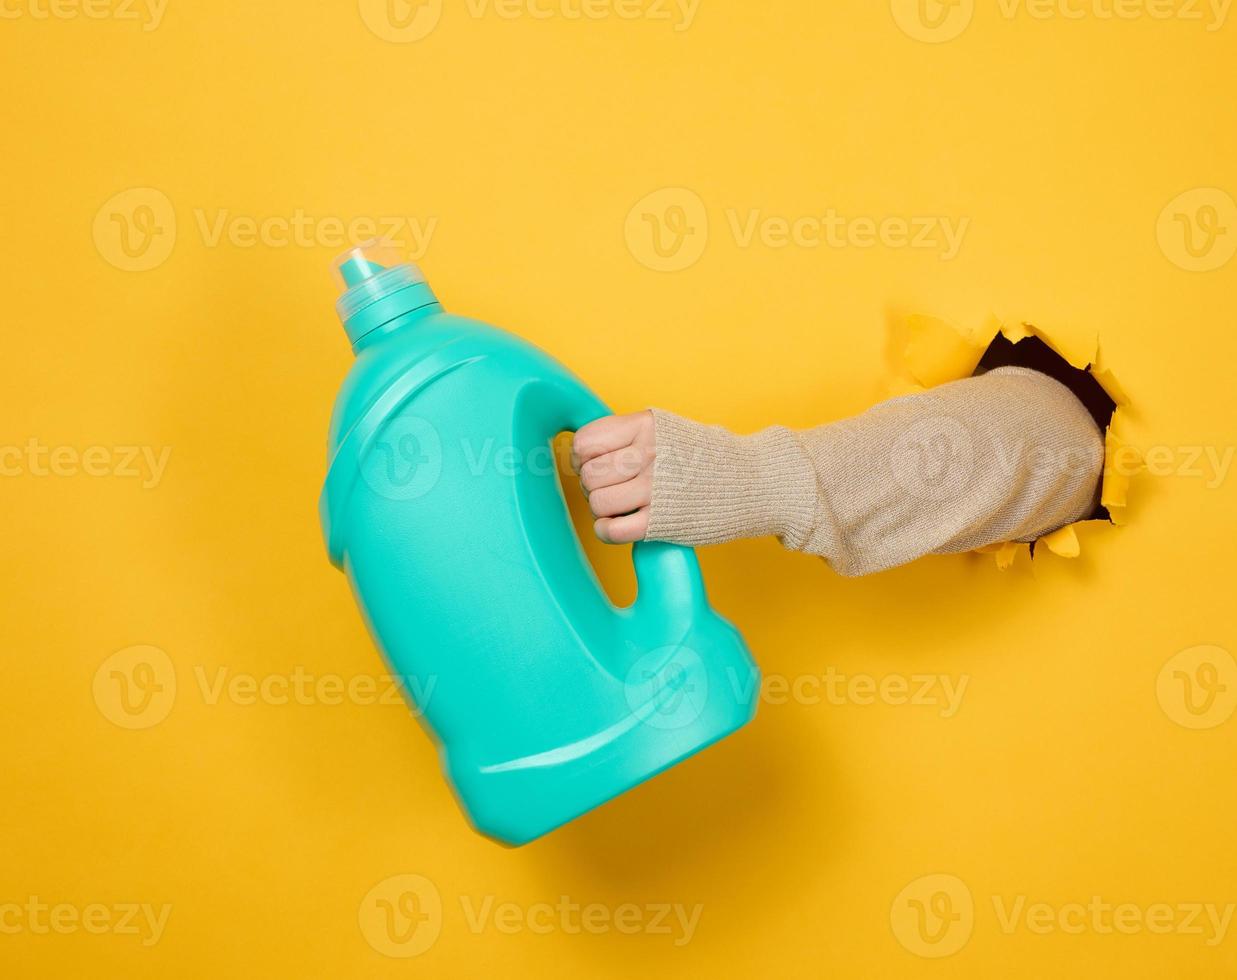 garrafa de plástico azul com detergente líquido em uma mão feminina em um fundo amarelo. uma parte do corpo sai de um buraco rasgado no fundo foto